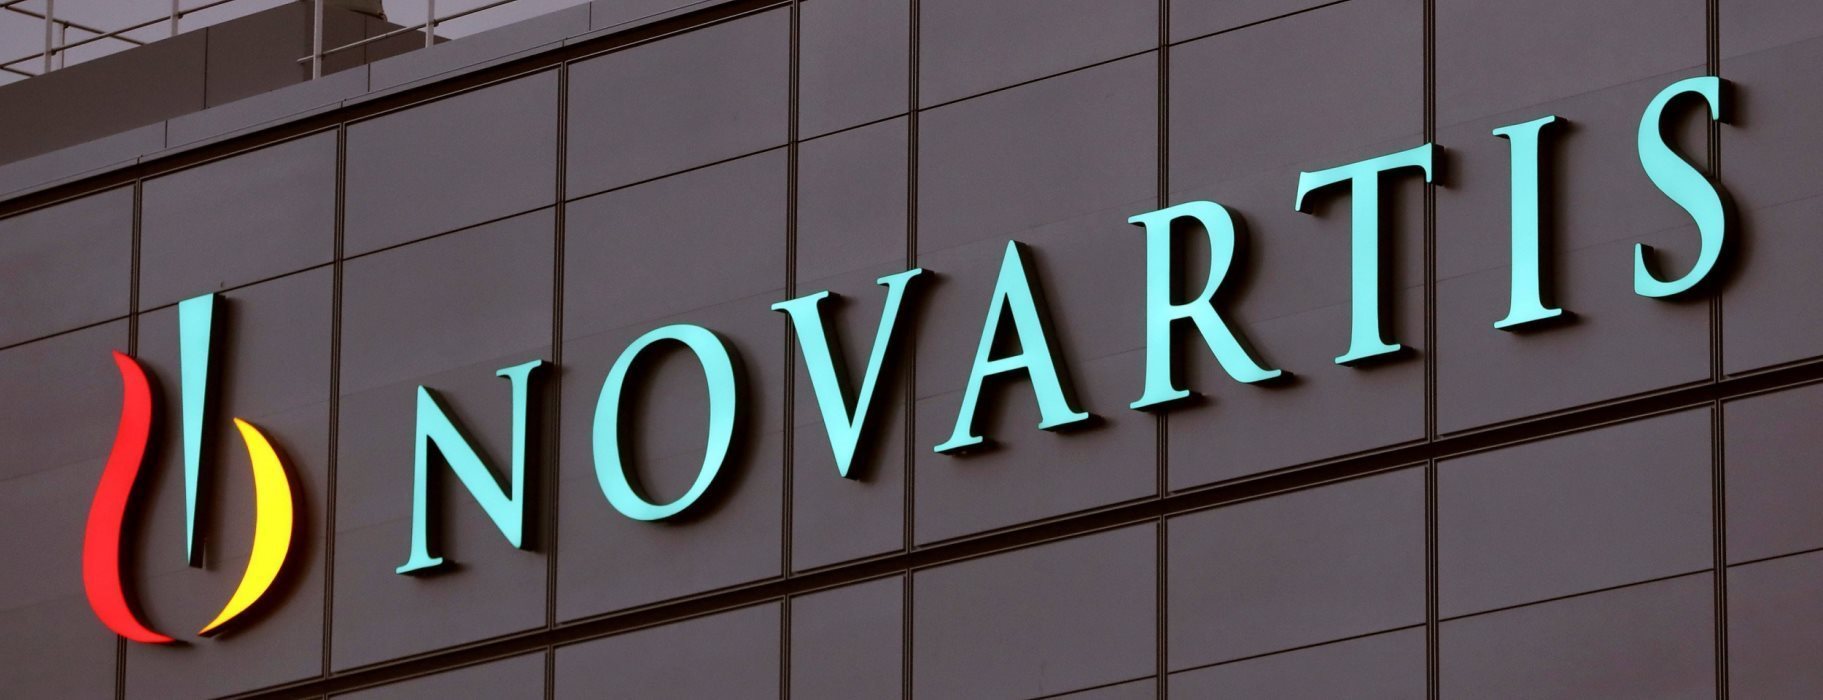 Δικαστική συνδρομή από τις ΗΠΑ ζητούν οι εισαγγελείς για την υπόθεση Novartis